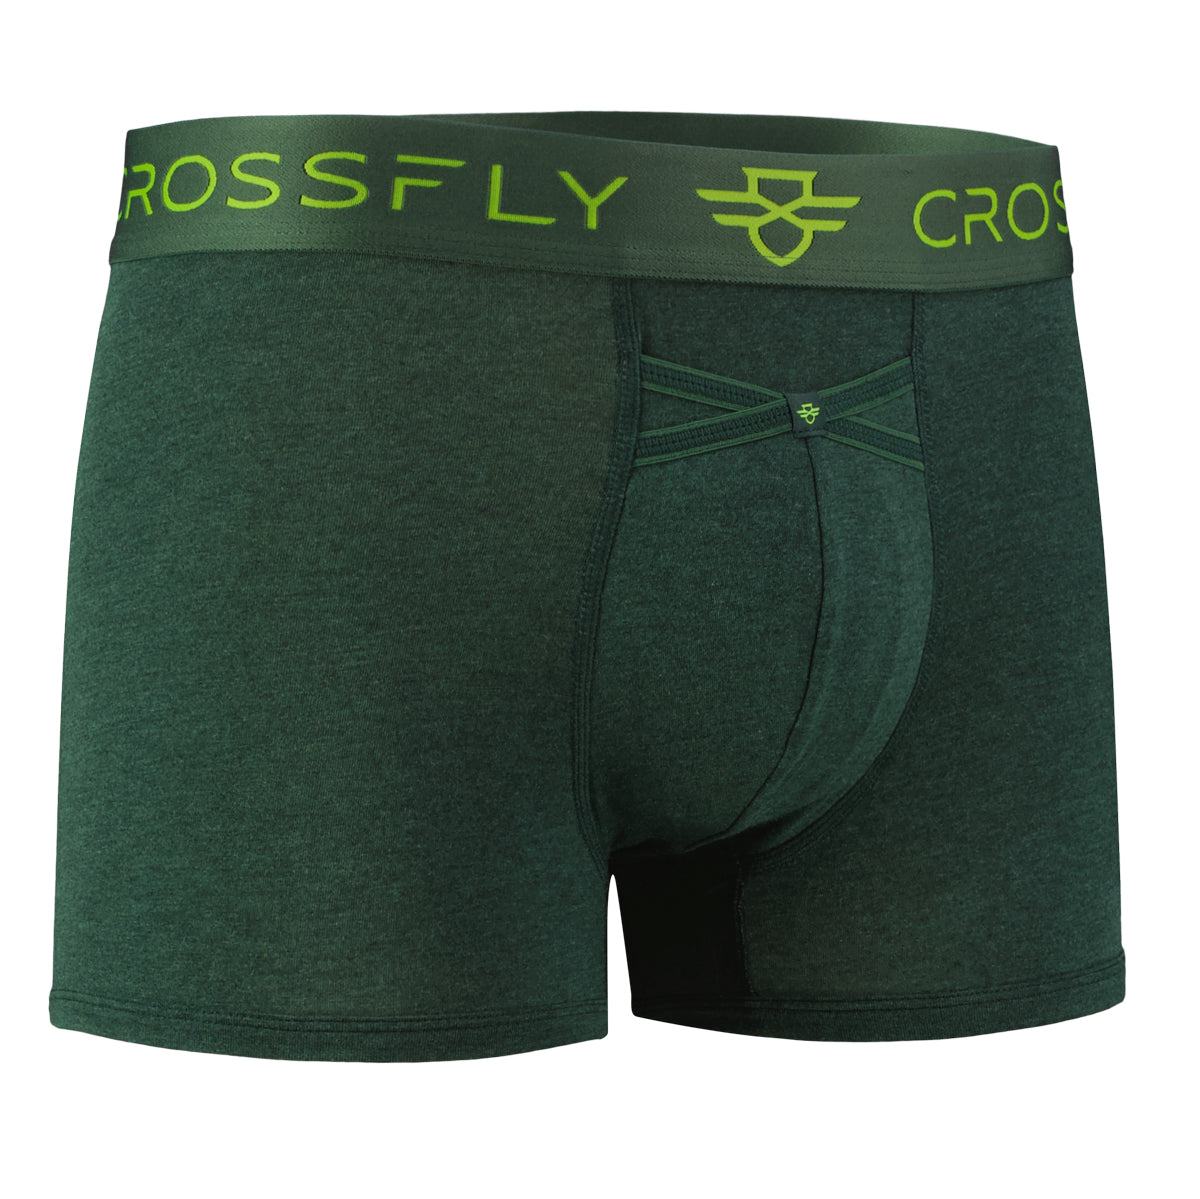 Pack of 3 IKON 3 Trunk Green Marle Modal l Crossfly Underwear 